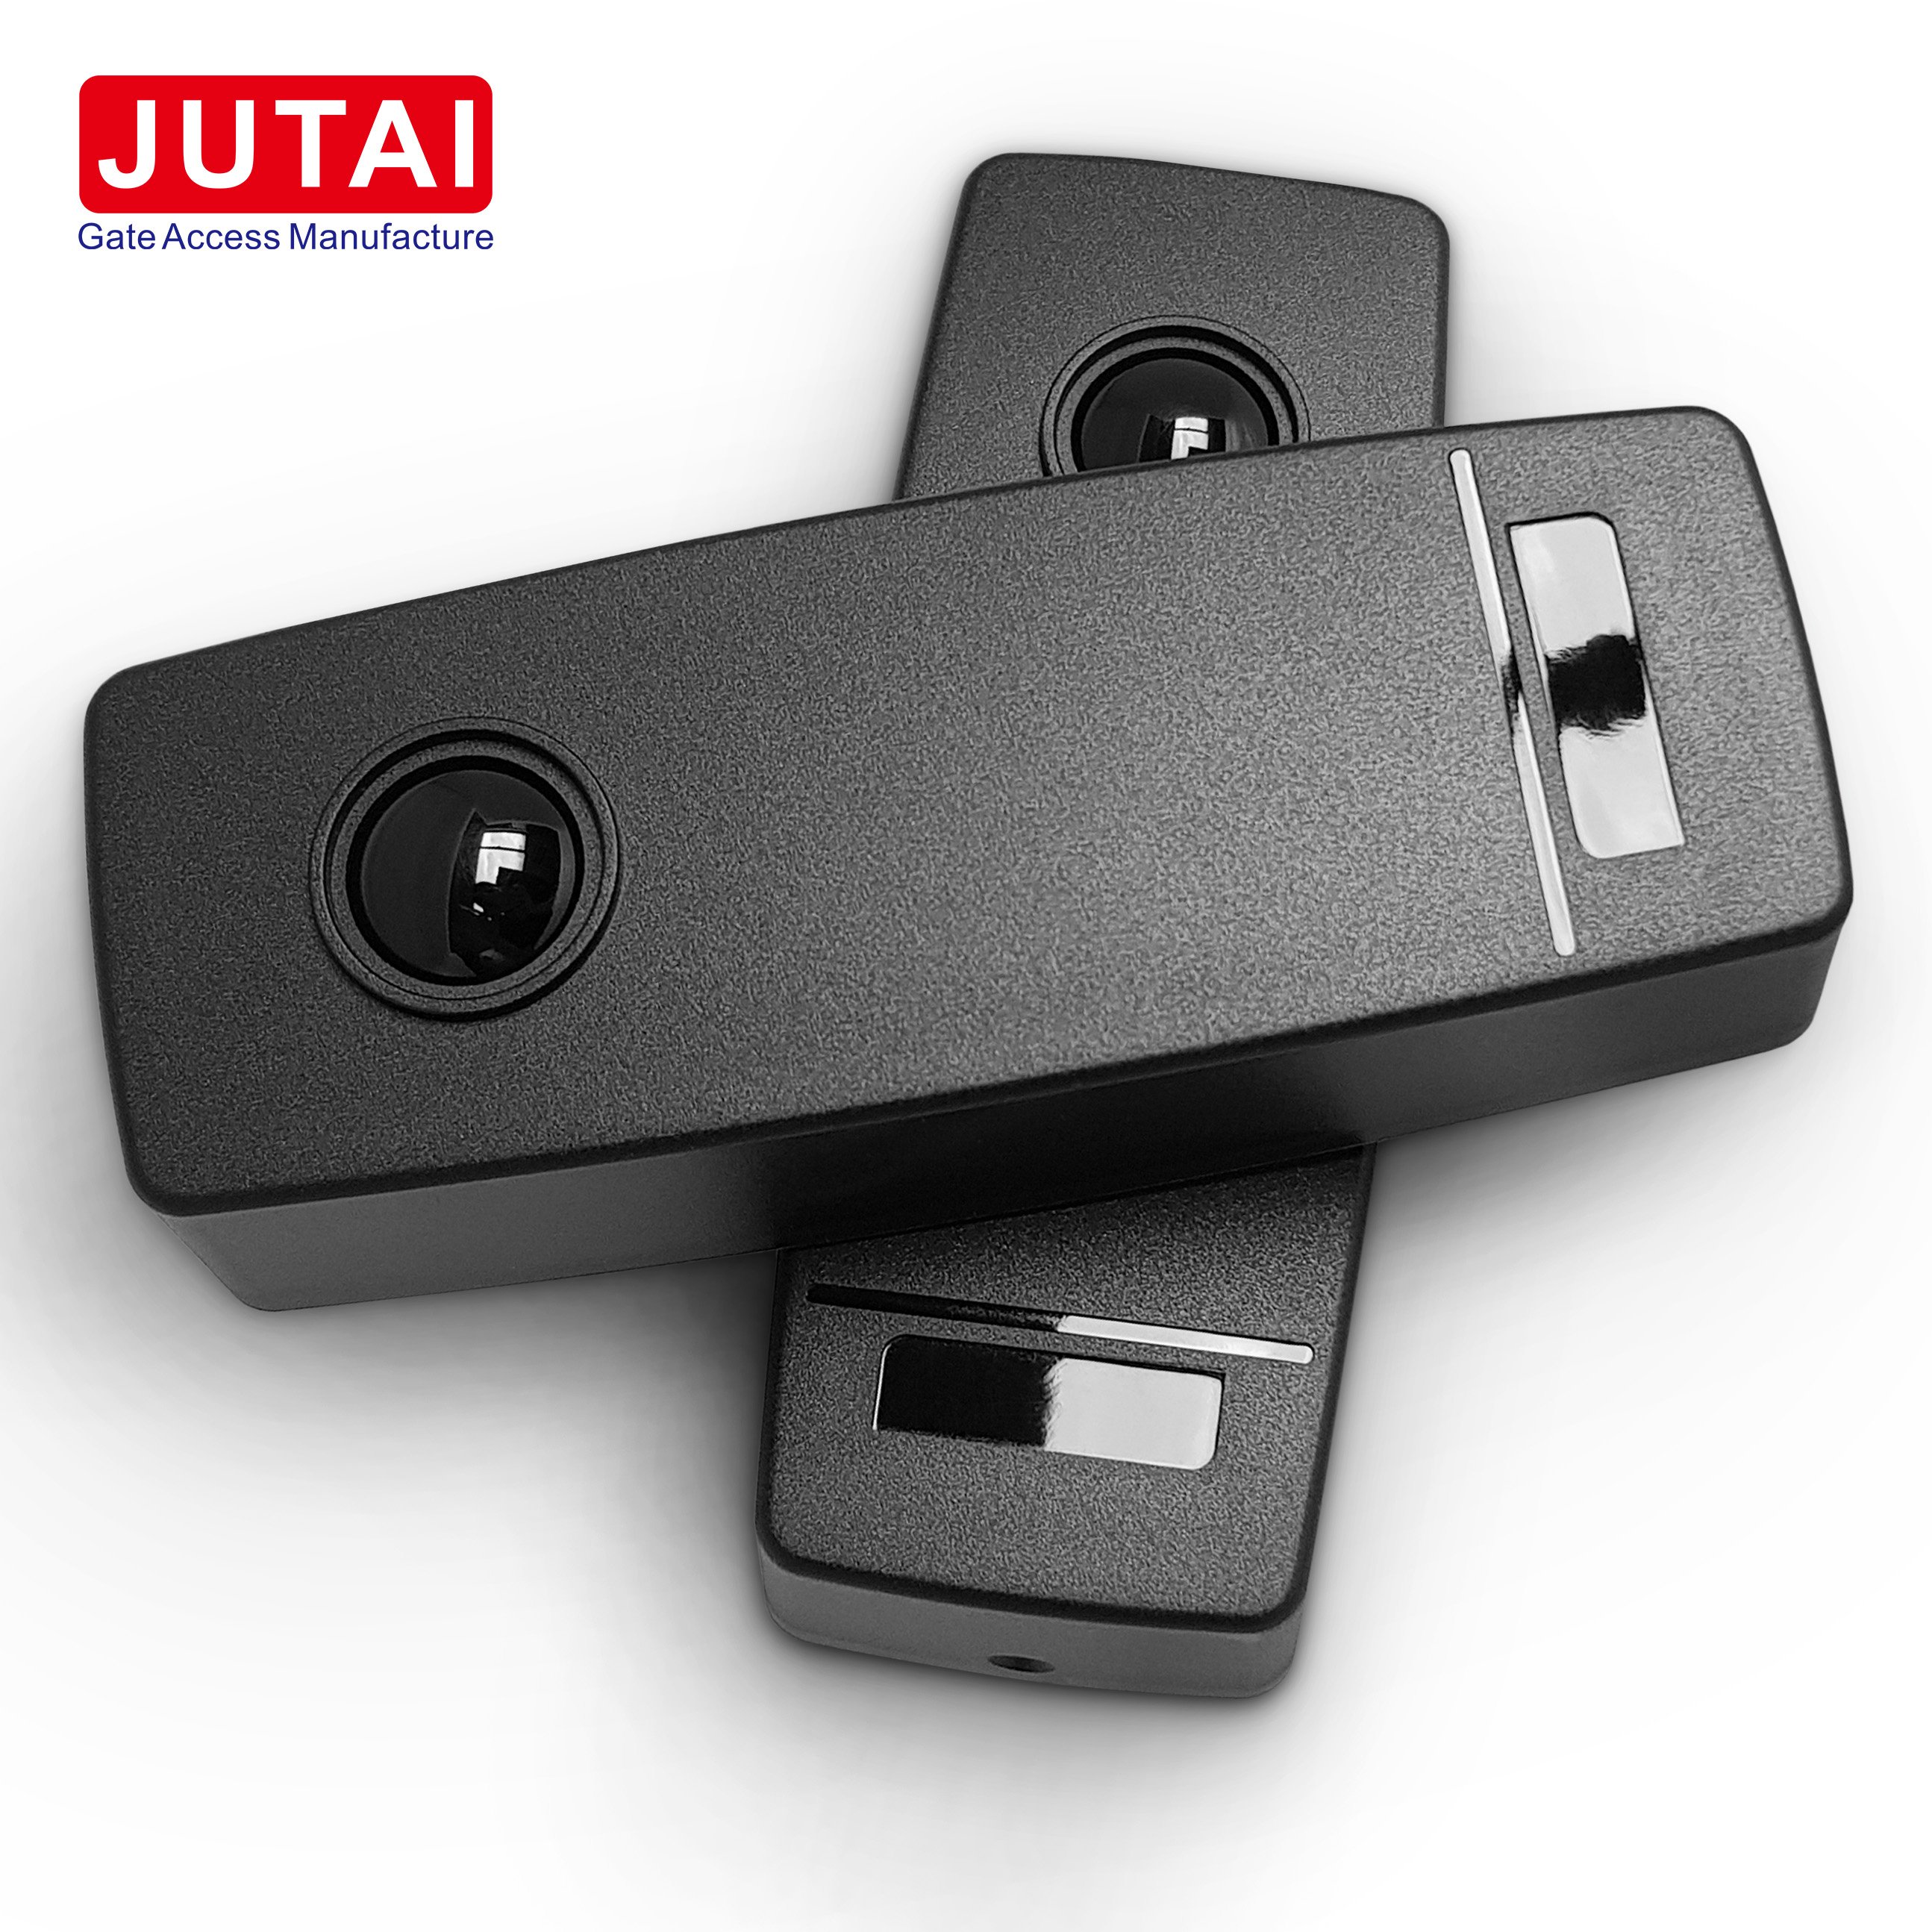 JUTAI WIS-30 Fotocelsensor met automatische poortstraal